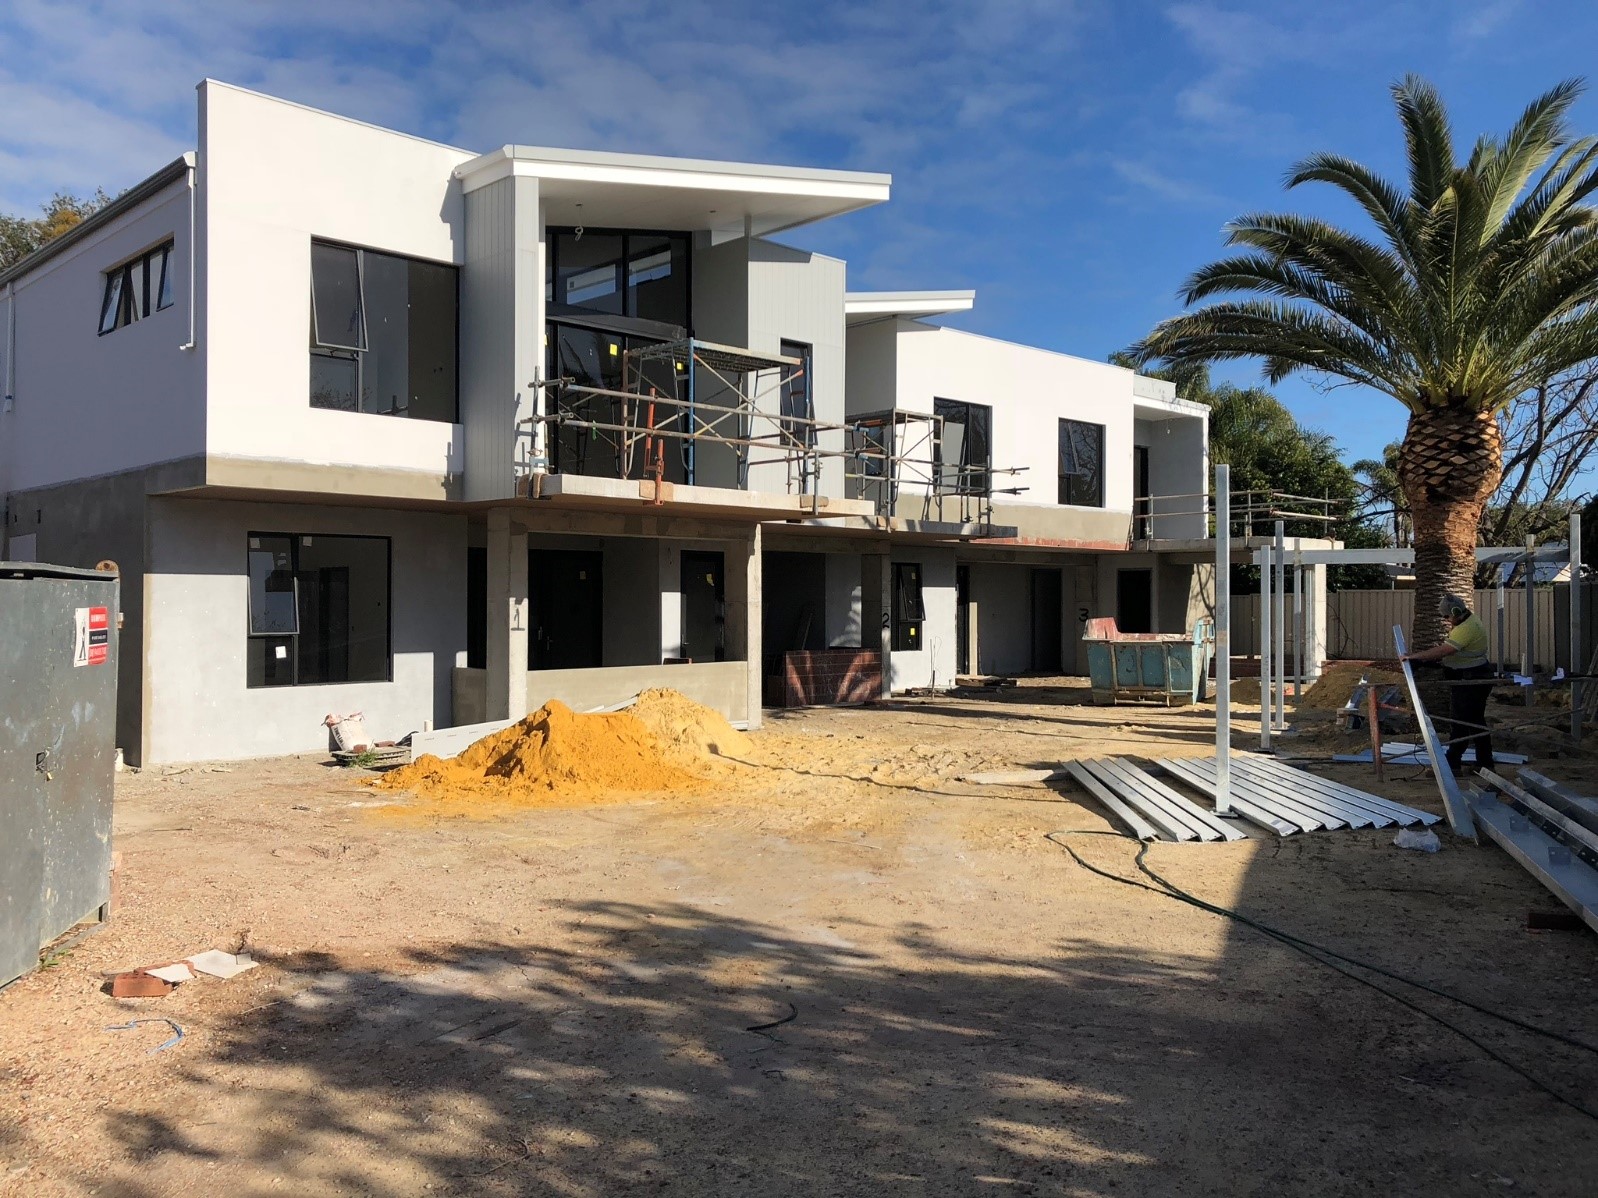 Ardross property development in-progress